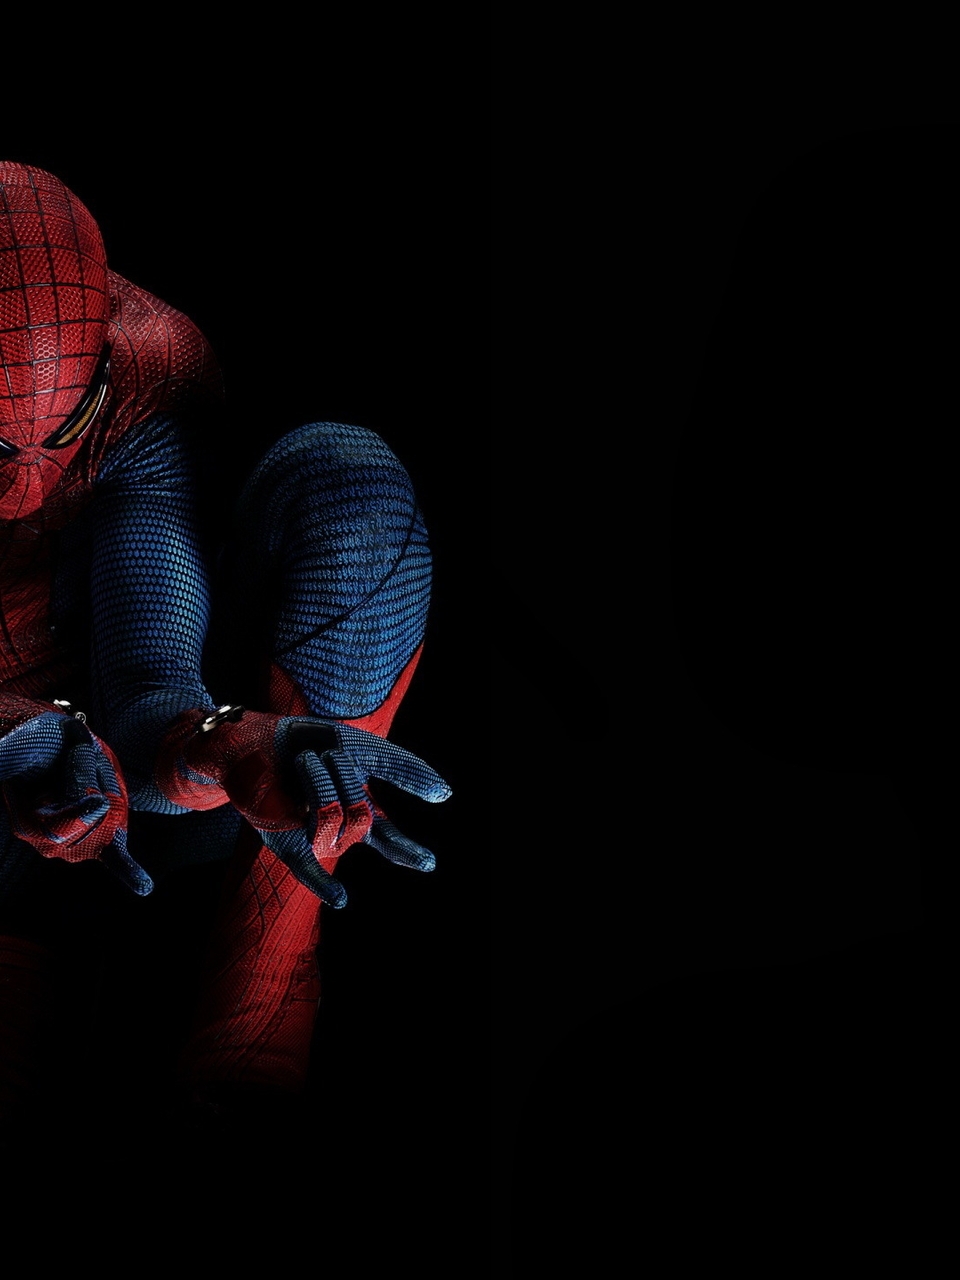 Картинка: Человек-паук, Spider-man, герой, Новый Человек-паук, The Amazing Spider-Man, прицел